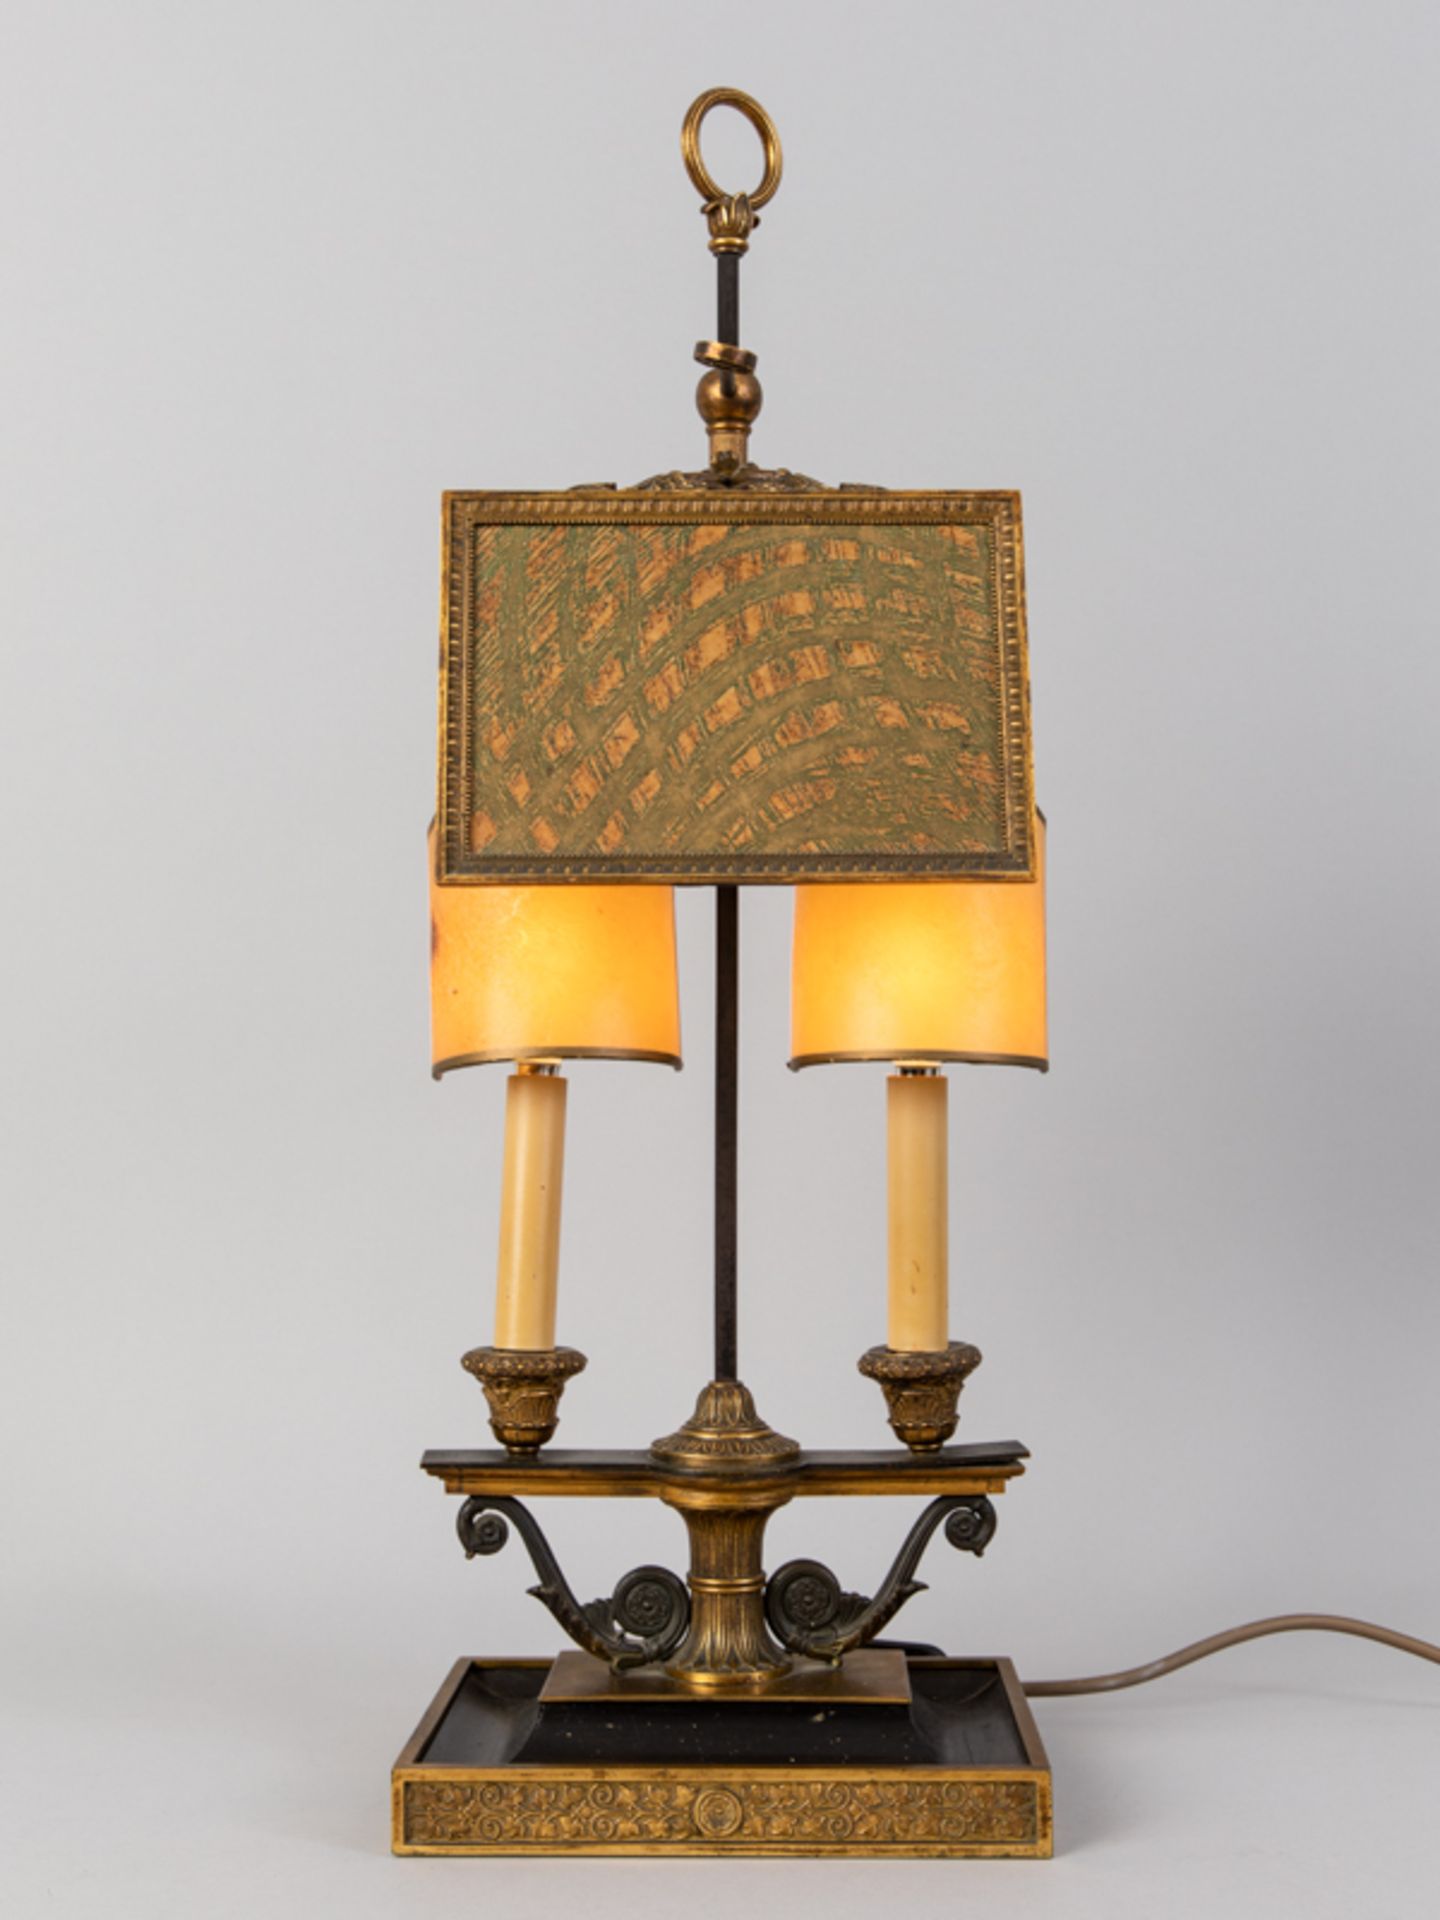 Neo-Empire-Tischlampe in Bouillotte-Art, wohl Schweden, um 1900. Bronze/Messing, teils brüniert